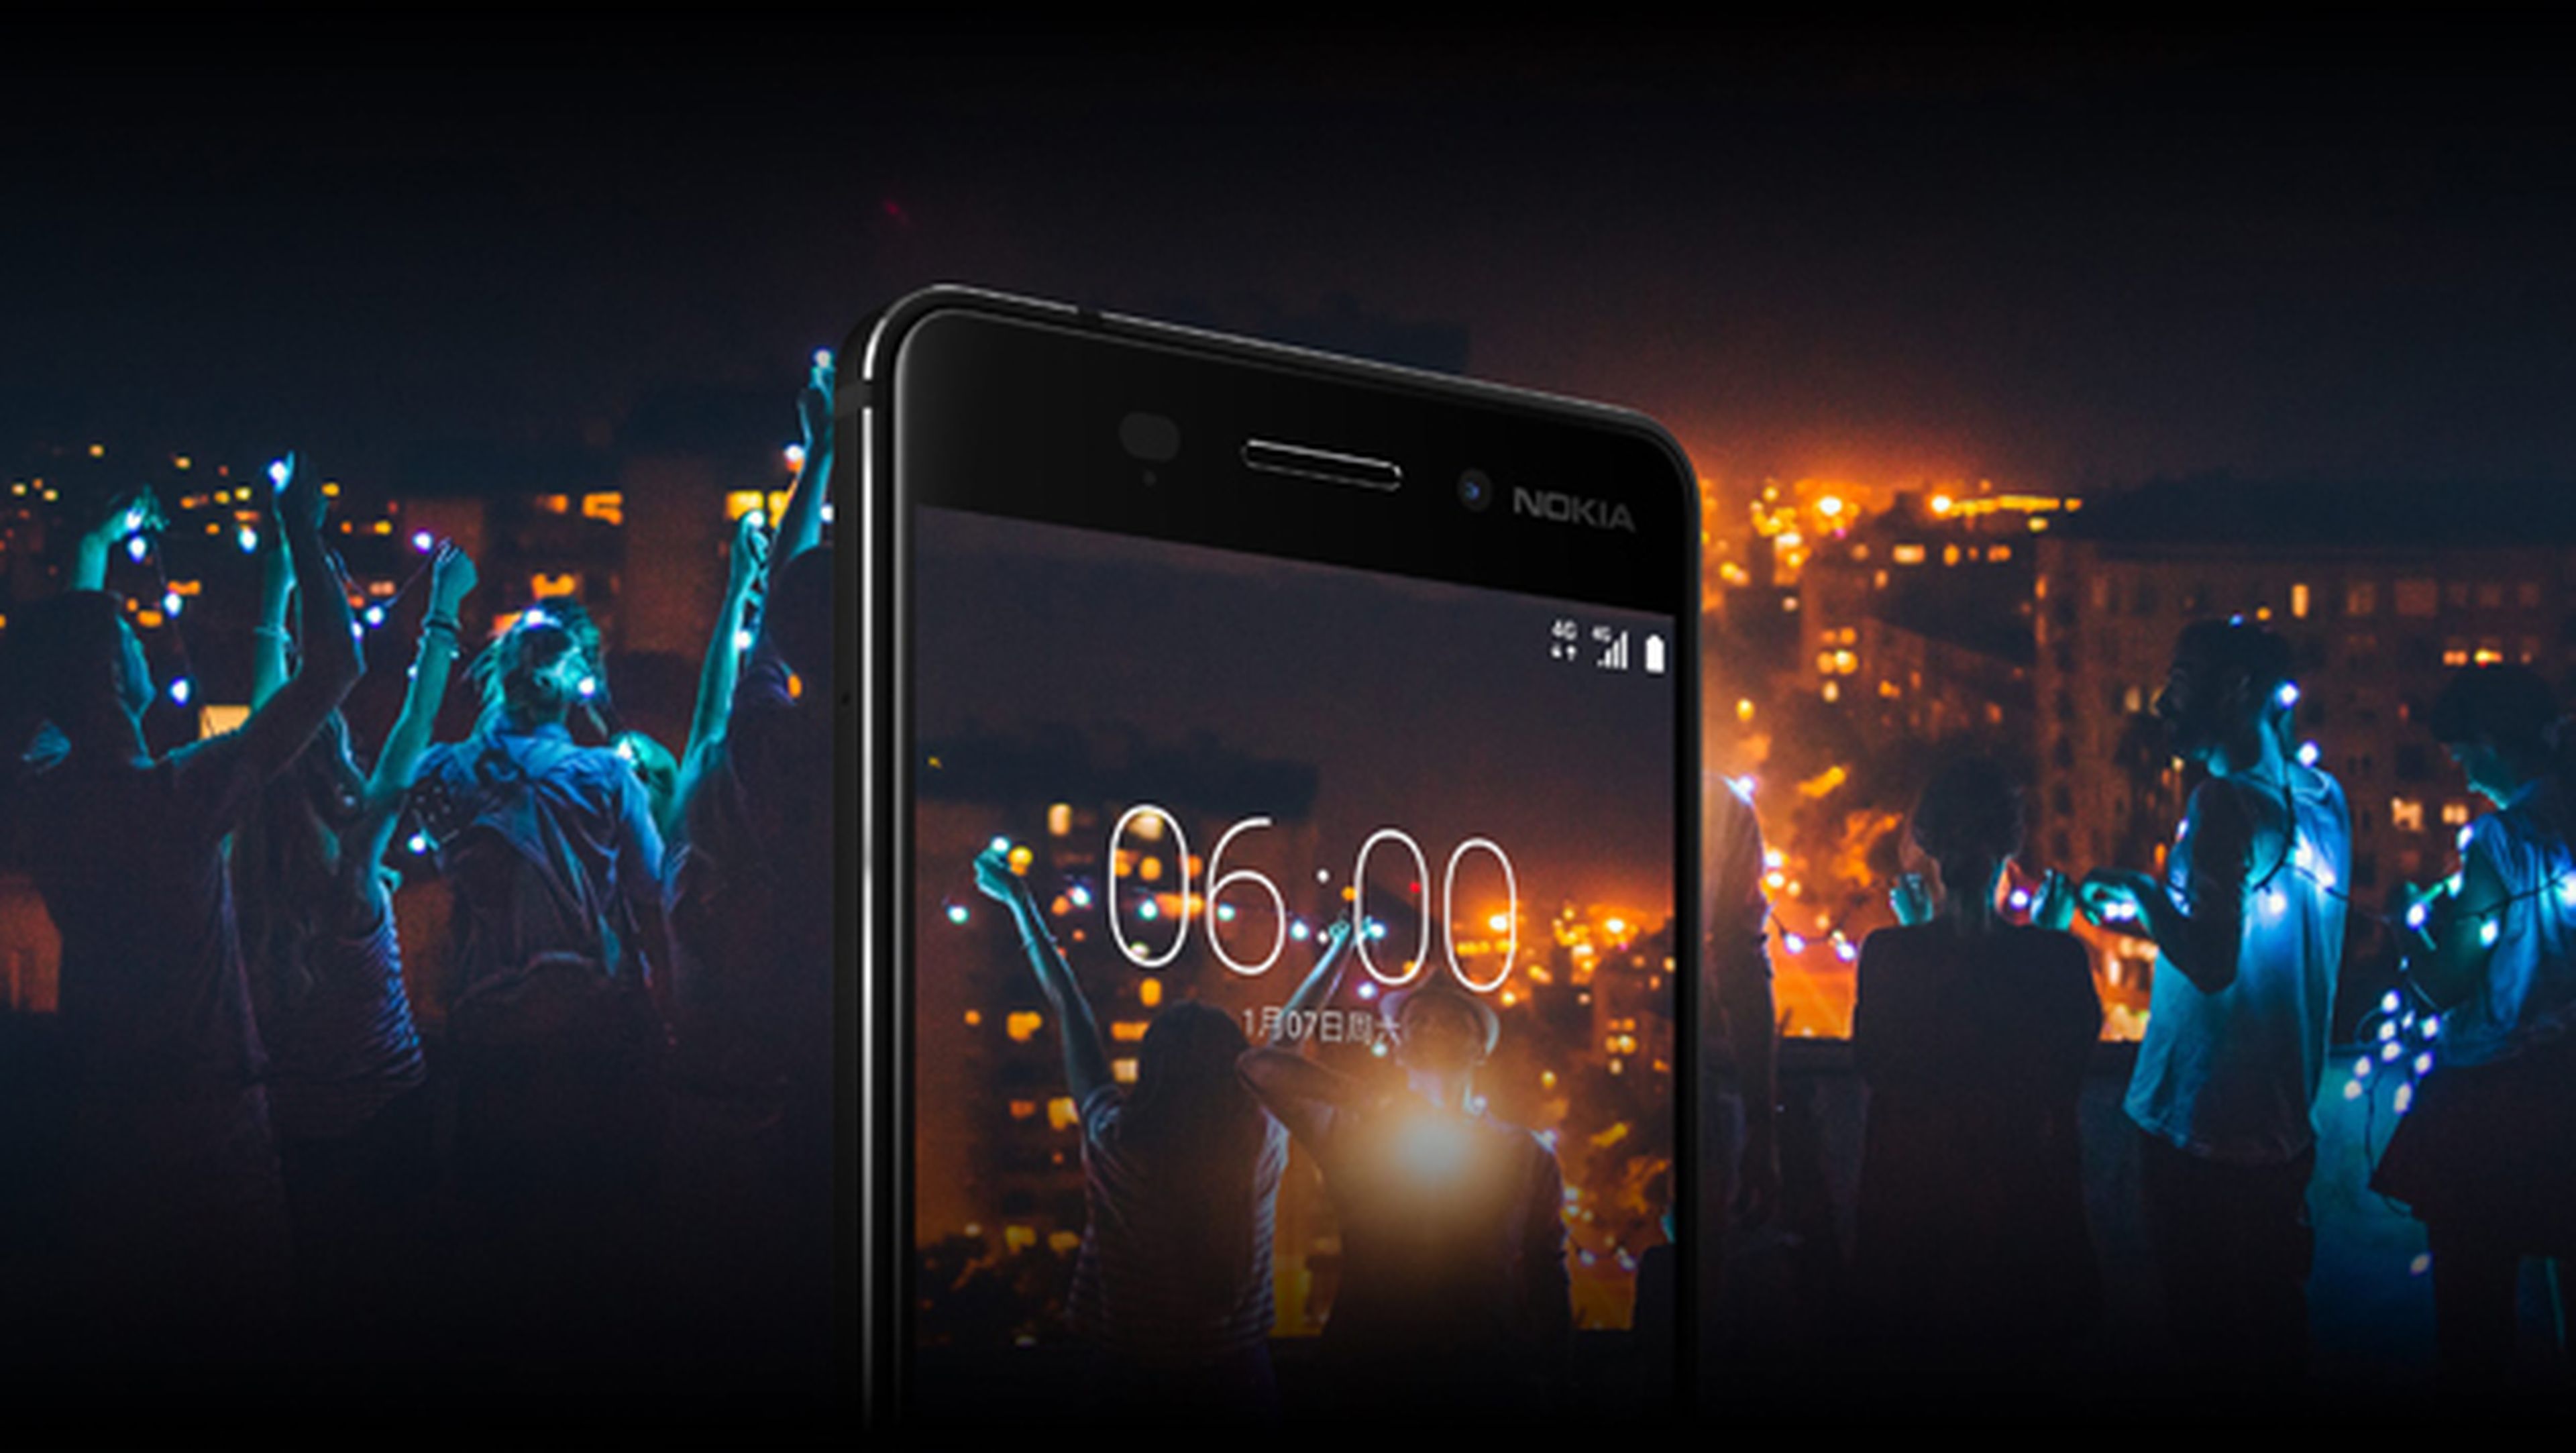 Nokia lanzará un móvil con procesador Snapdragon 835